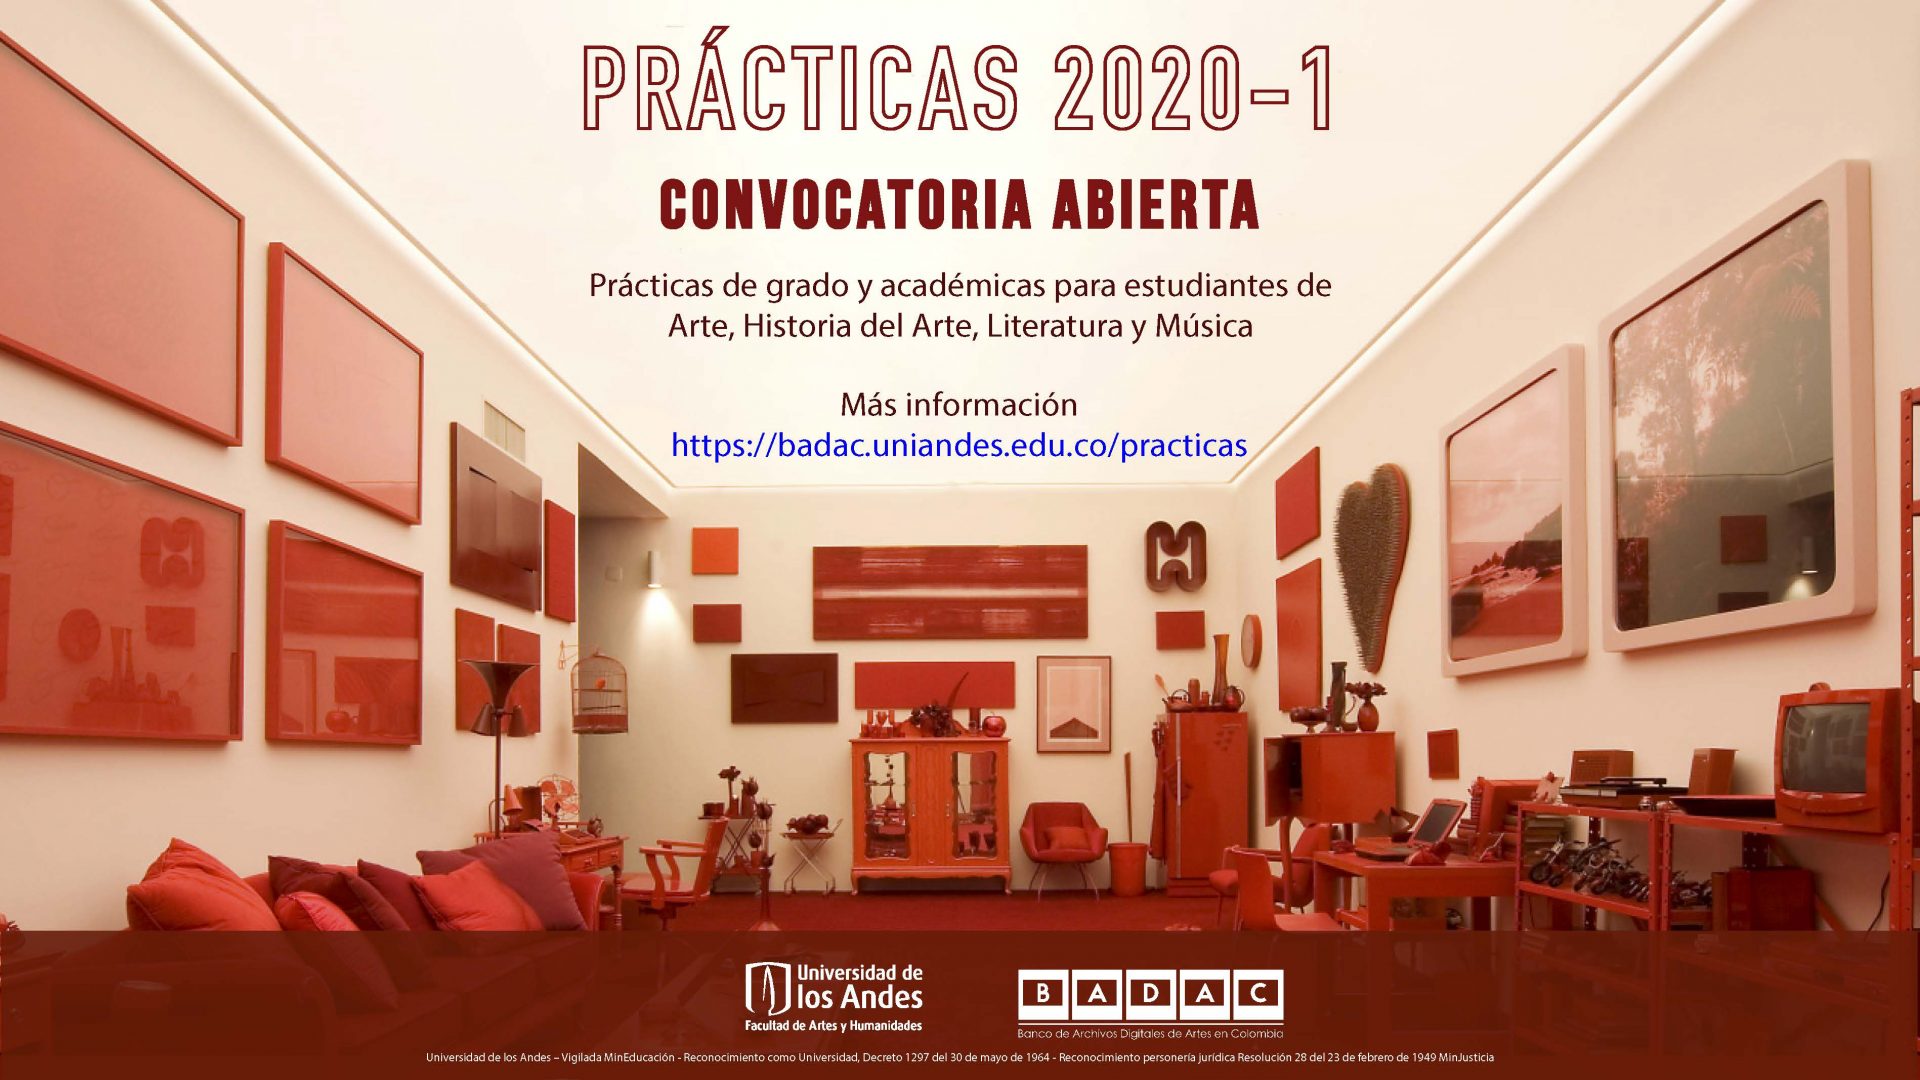 El Banco de Archivos Digitales de Artes en Colombia (BADAC) de Uniandes busca practicantes, consulte aquí los requisitos.